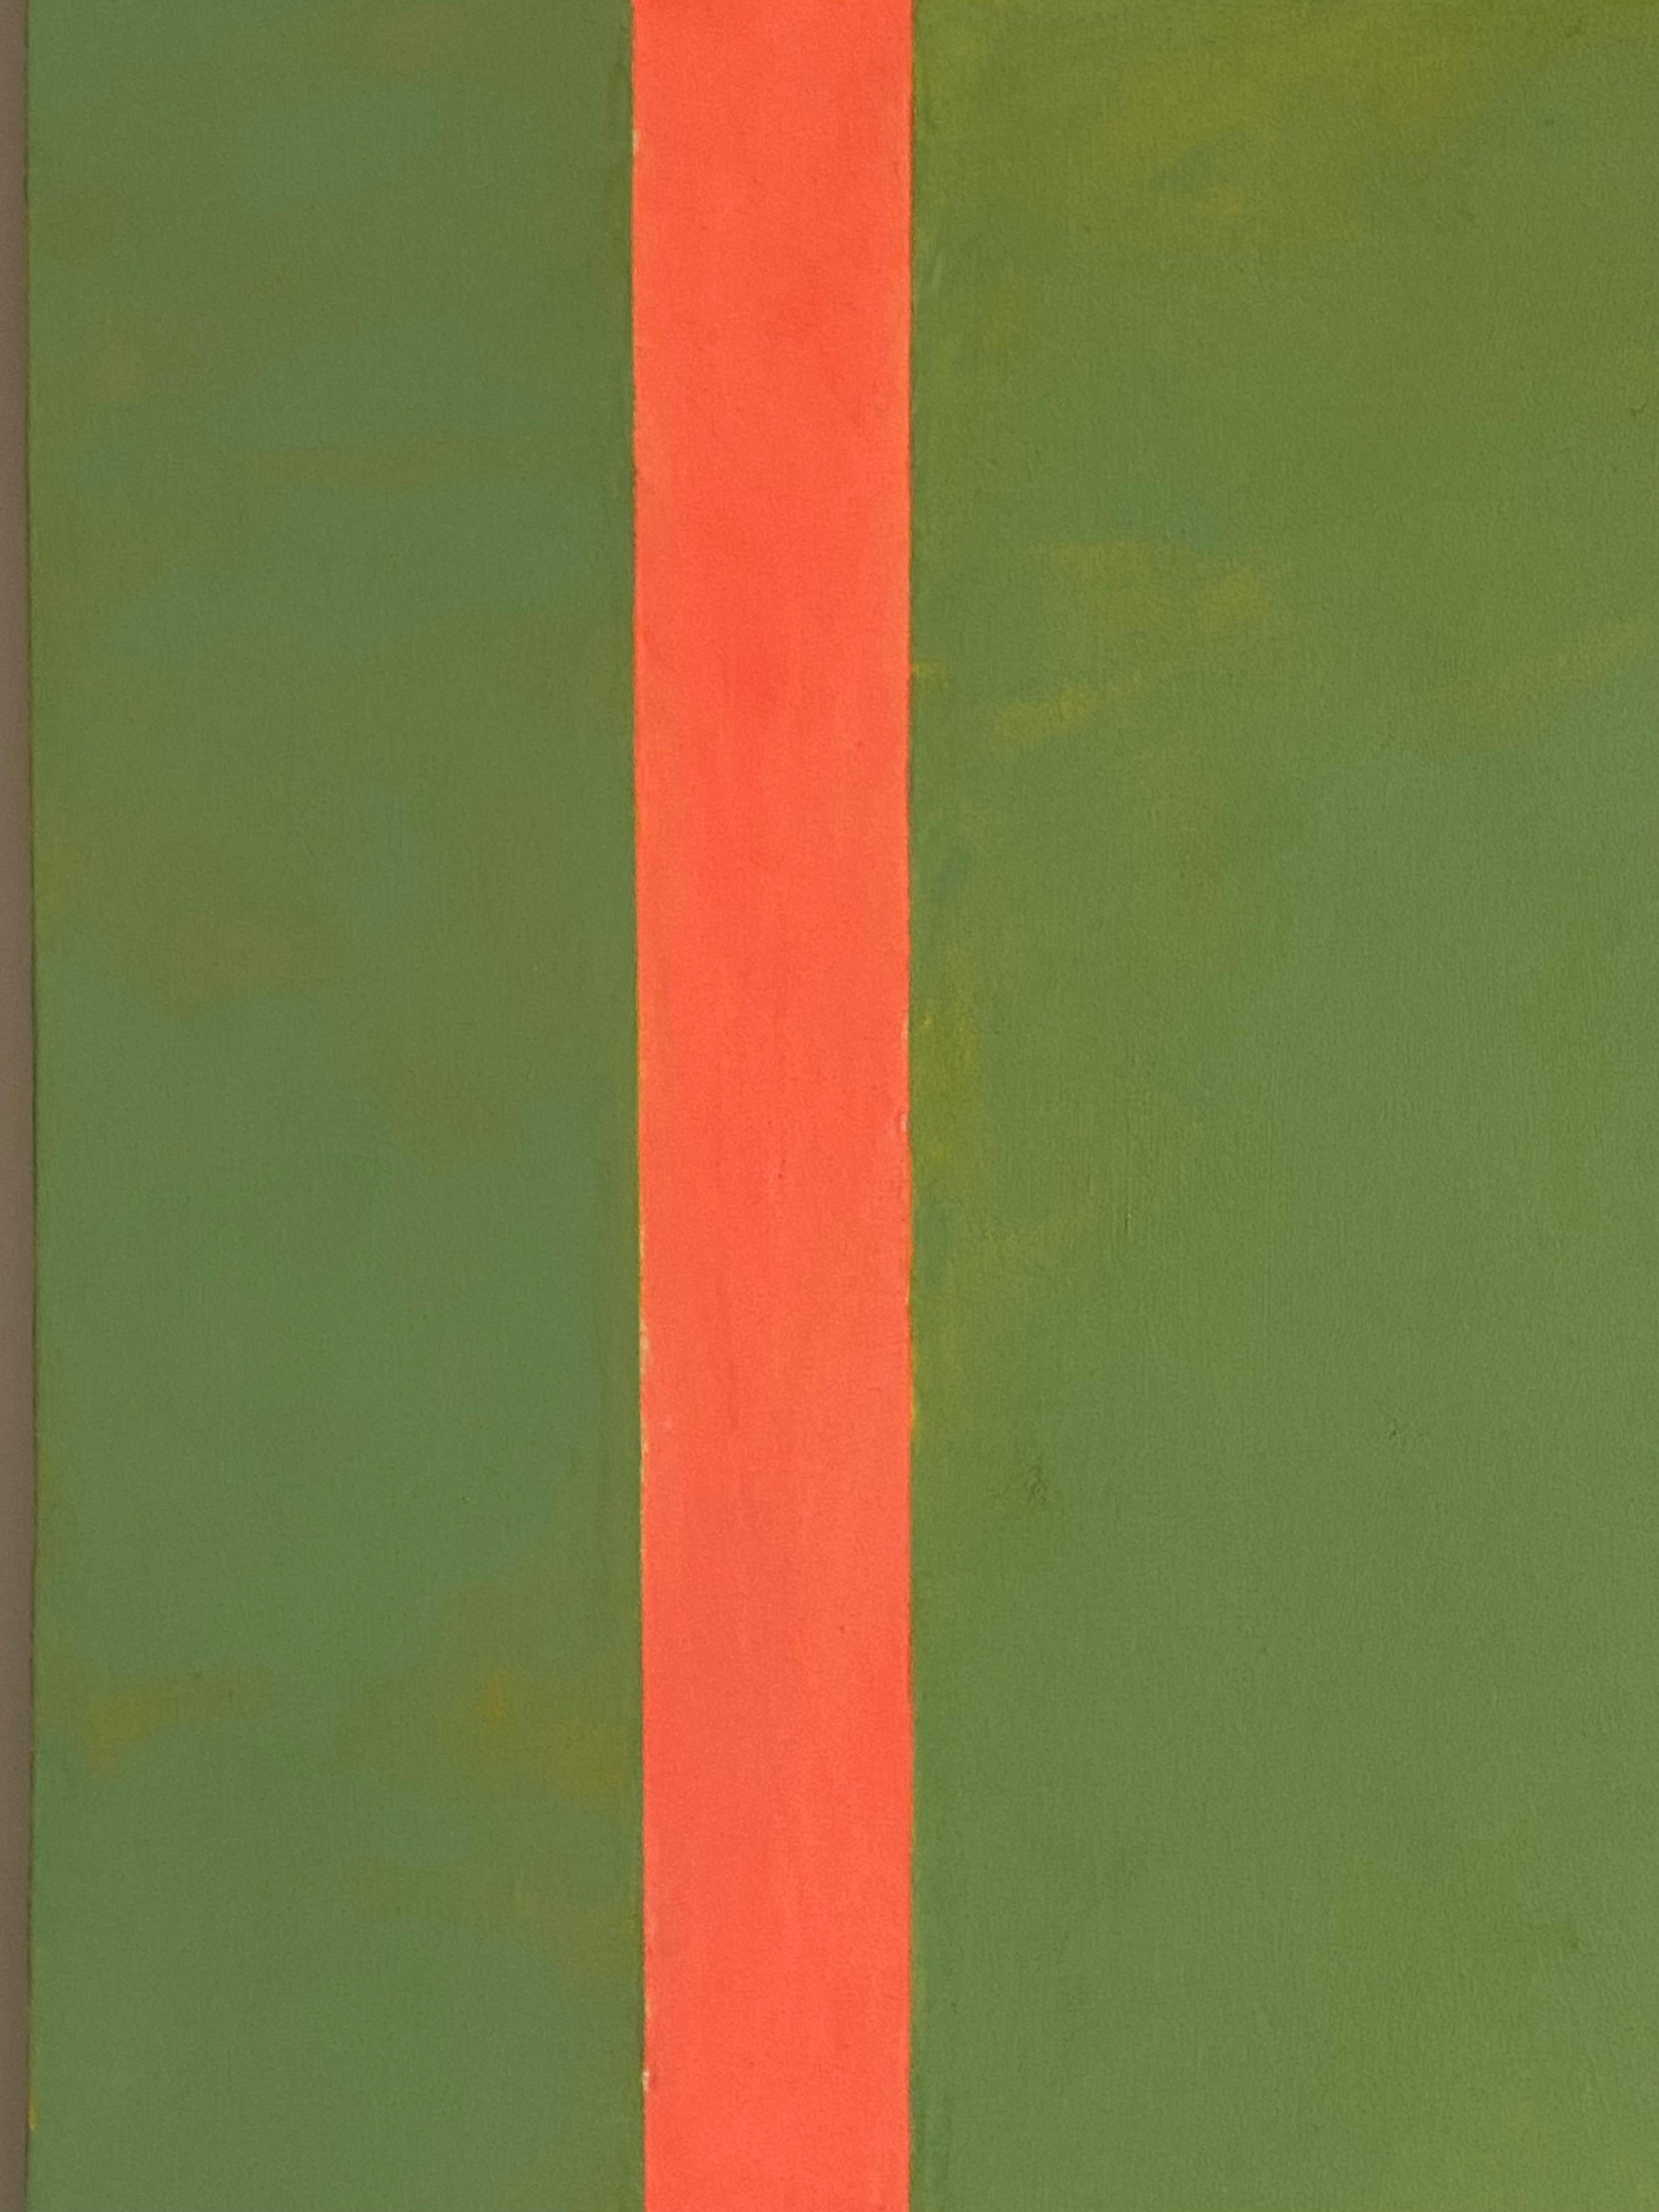 PG 18, Geometrisches abstraktes Gemälde, Grün, Koralle Orange, Beige, geformtes Paneel 1